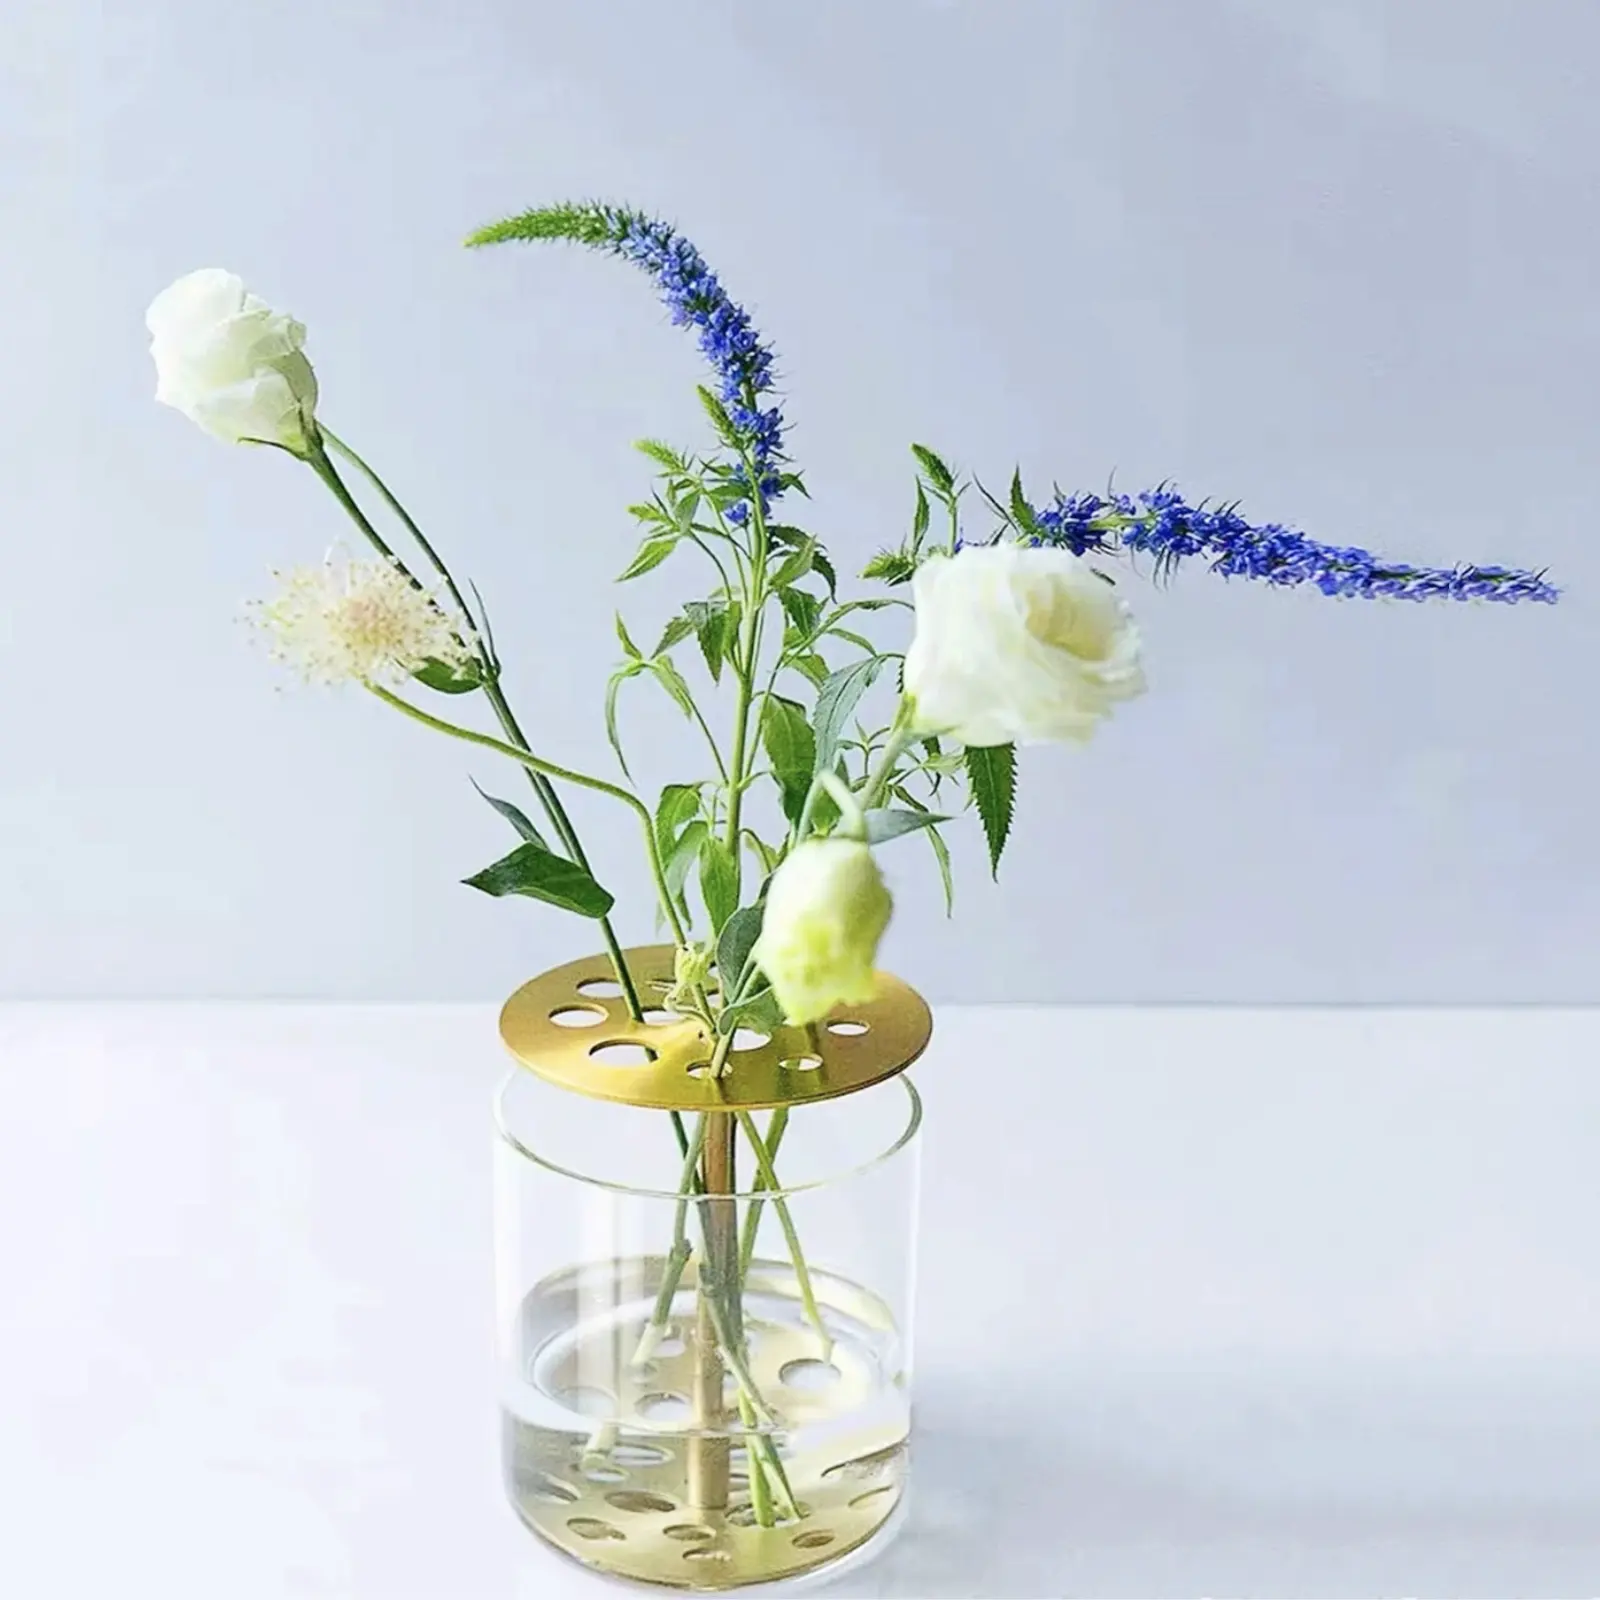 Minimalistic Chì Miễn Phí Brass Borosilicate Thủy Tinh Hoa Ếch Thủy Canh Vàng Kim Loại Flower Jar Nắp Bắc Âu Hiện Đại Chất Lượng Cao